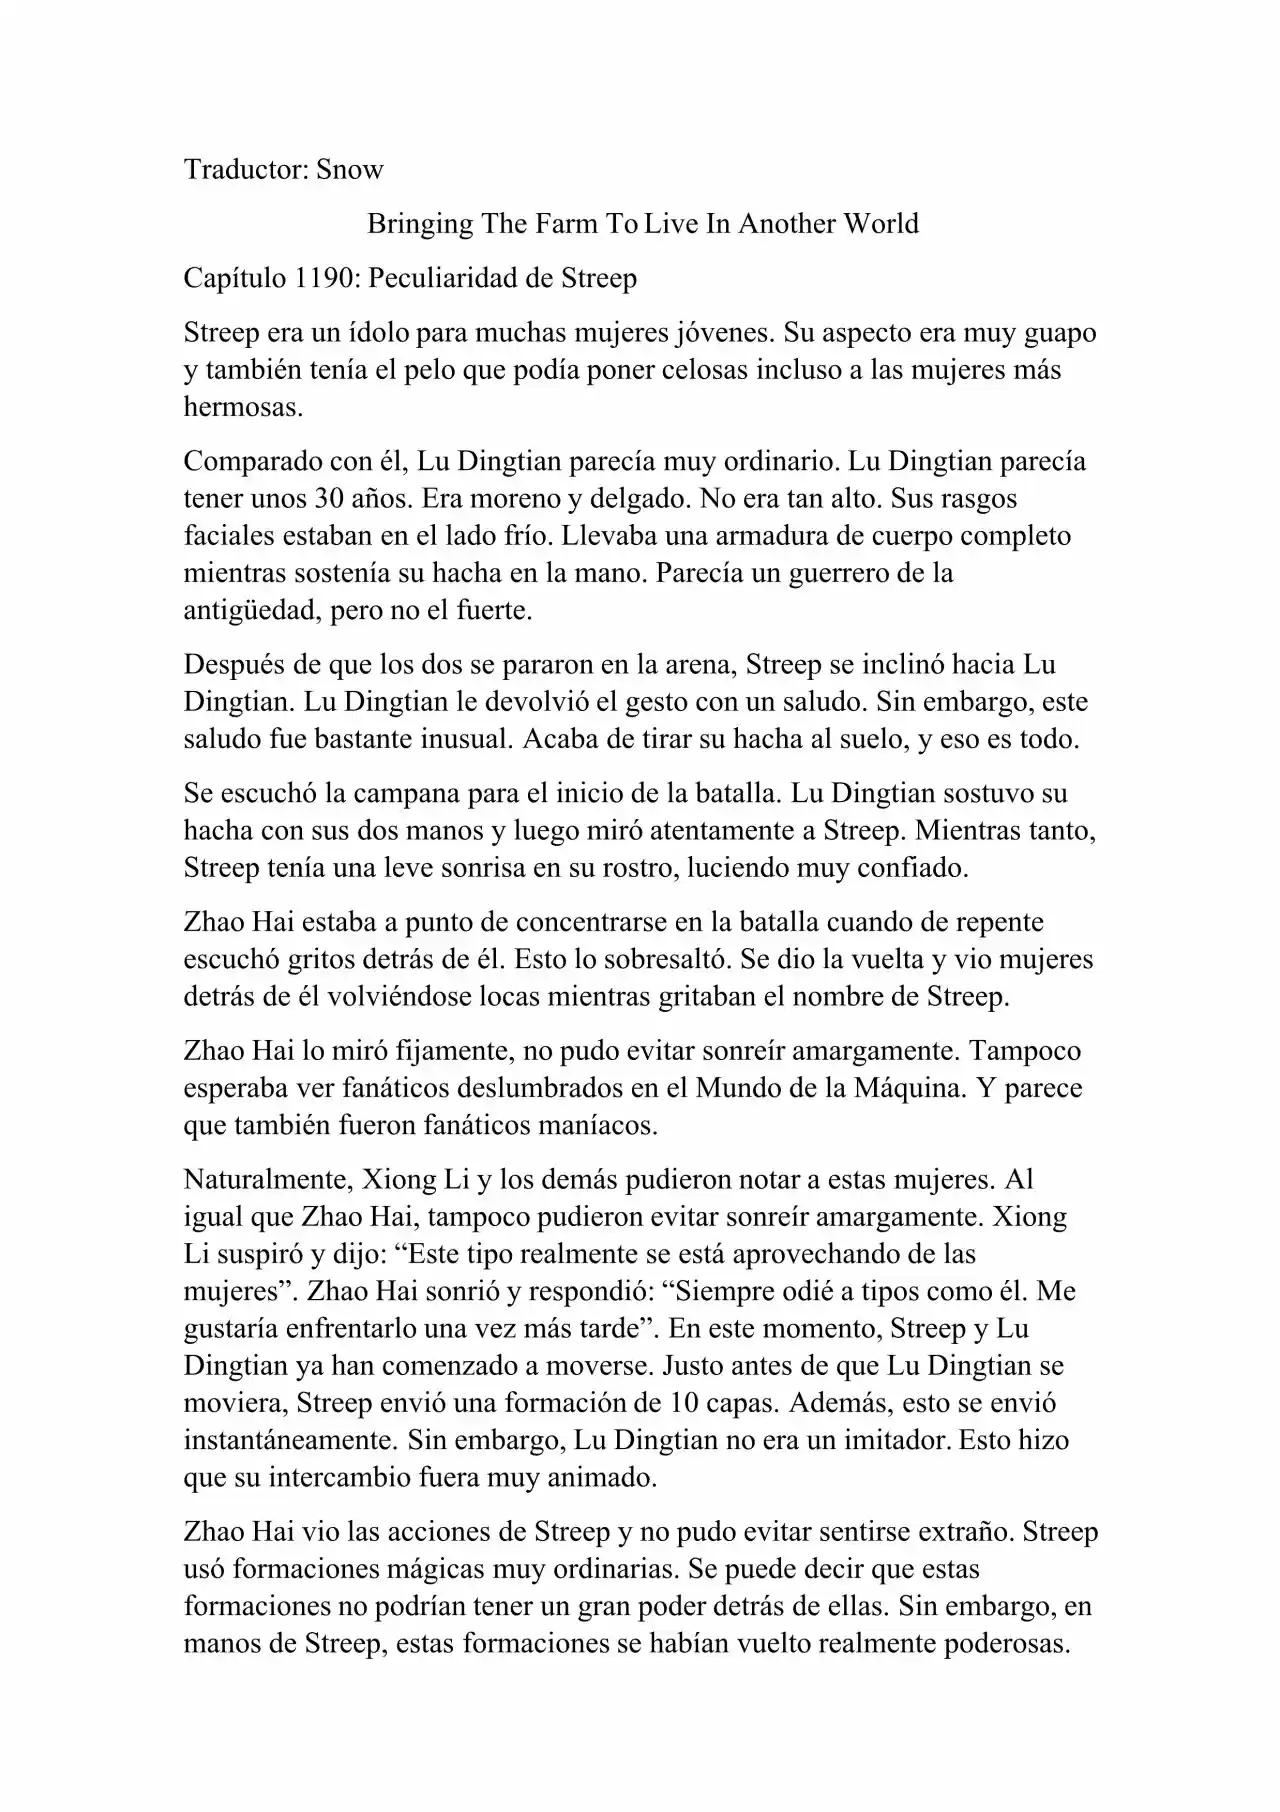 Llevando La Granja Para Vivir En Otro Mundo (Novela: Chapter 1190 - Page 1